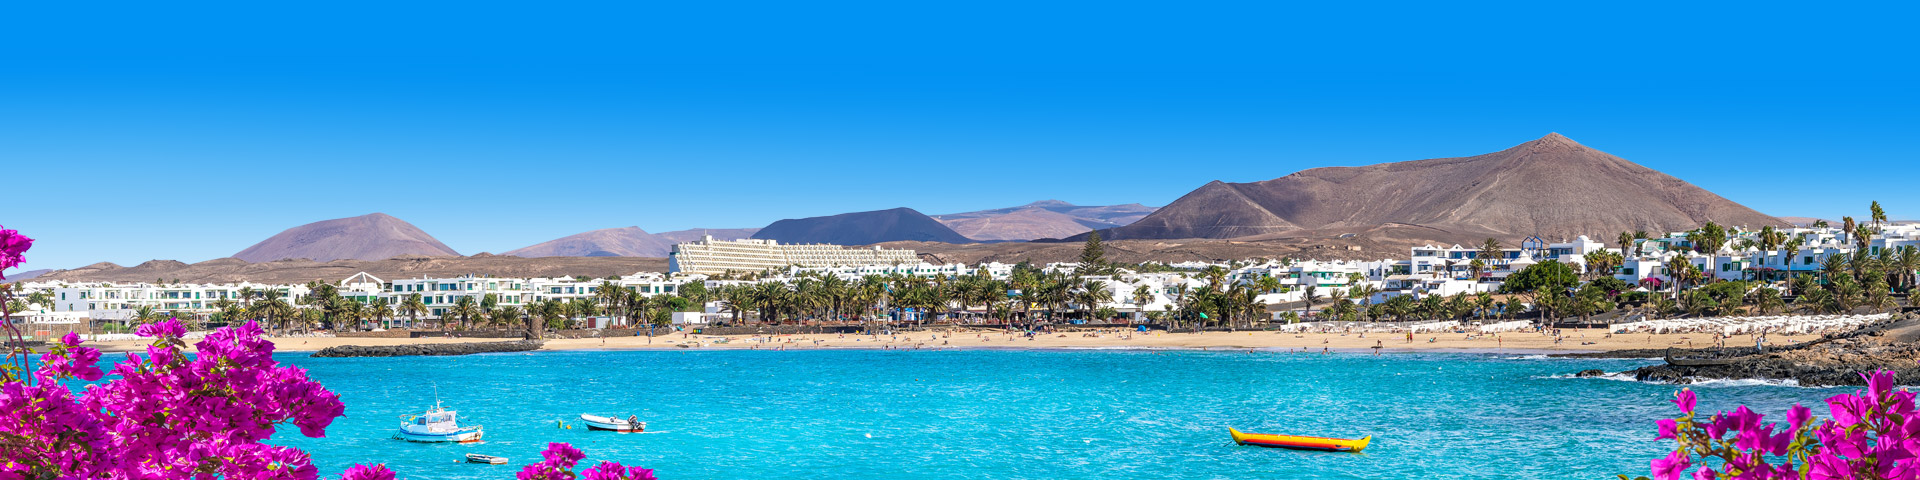 Uitzicht op de kust van Lanzarote met heuvellandschap en witte huisjes aan het strand